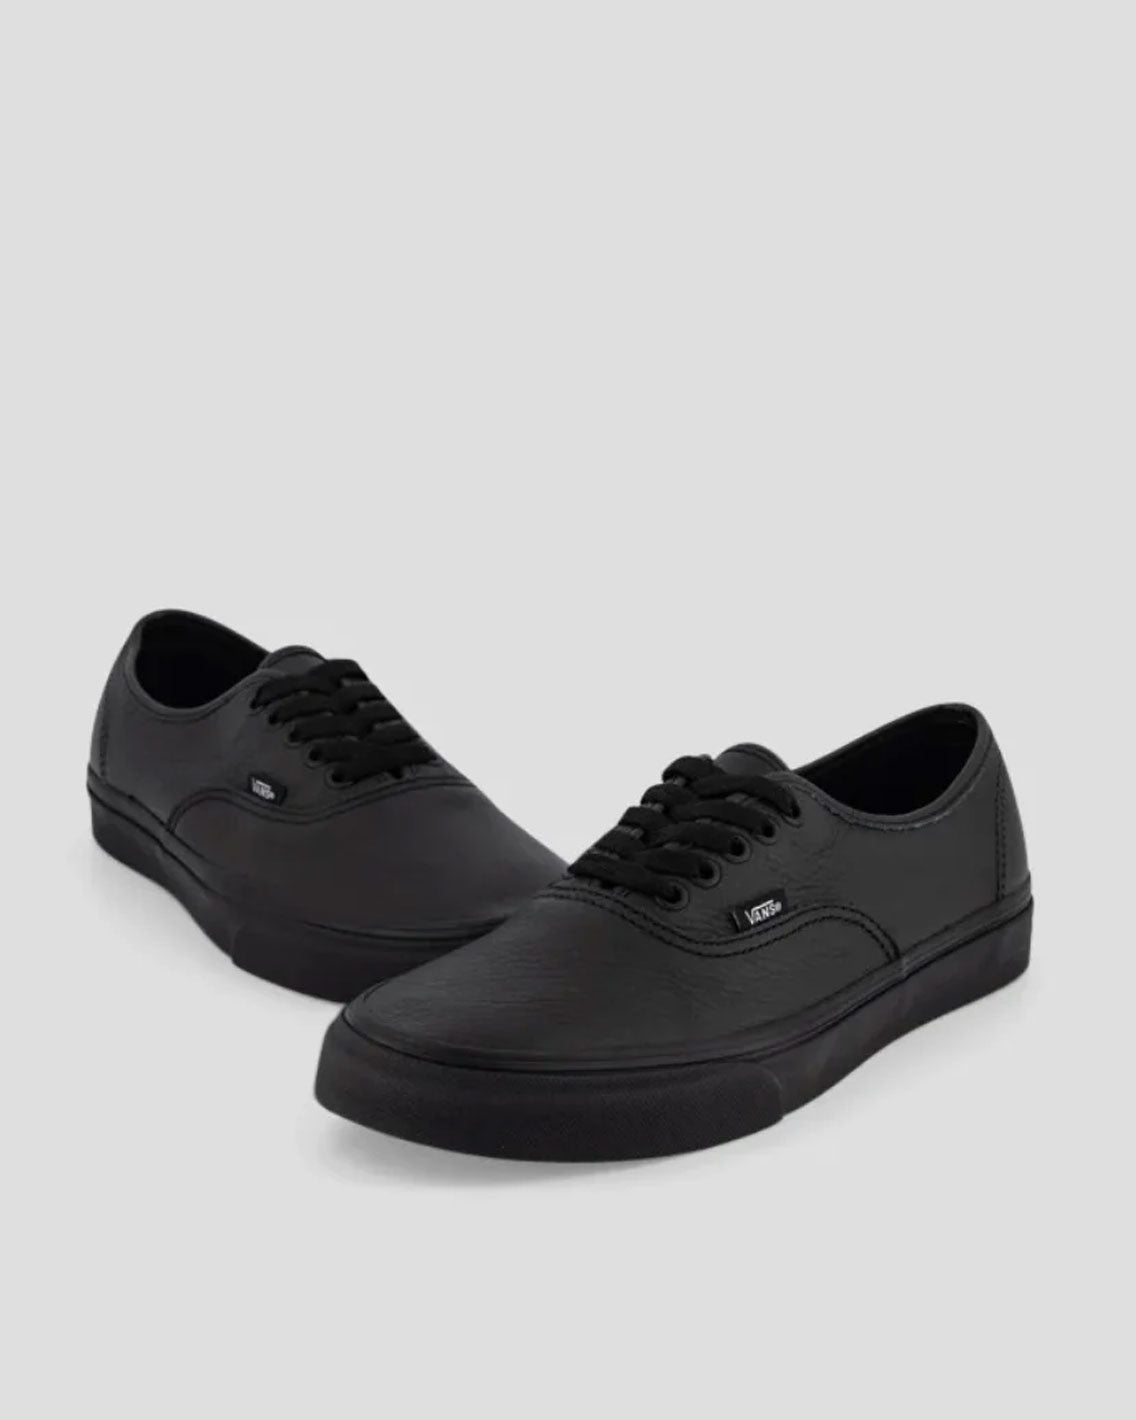 Vans - Authentic Leather - Black / Black